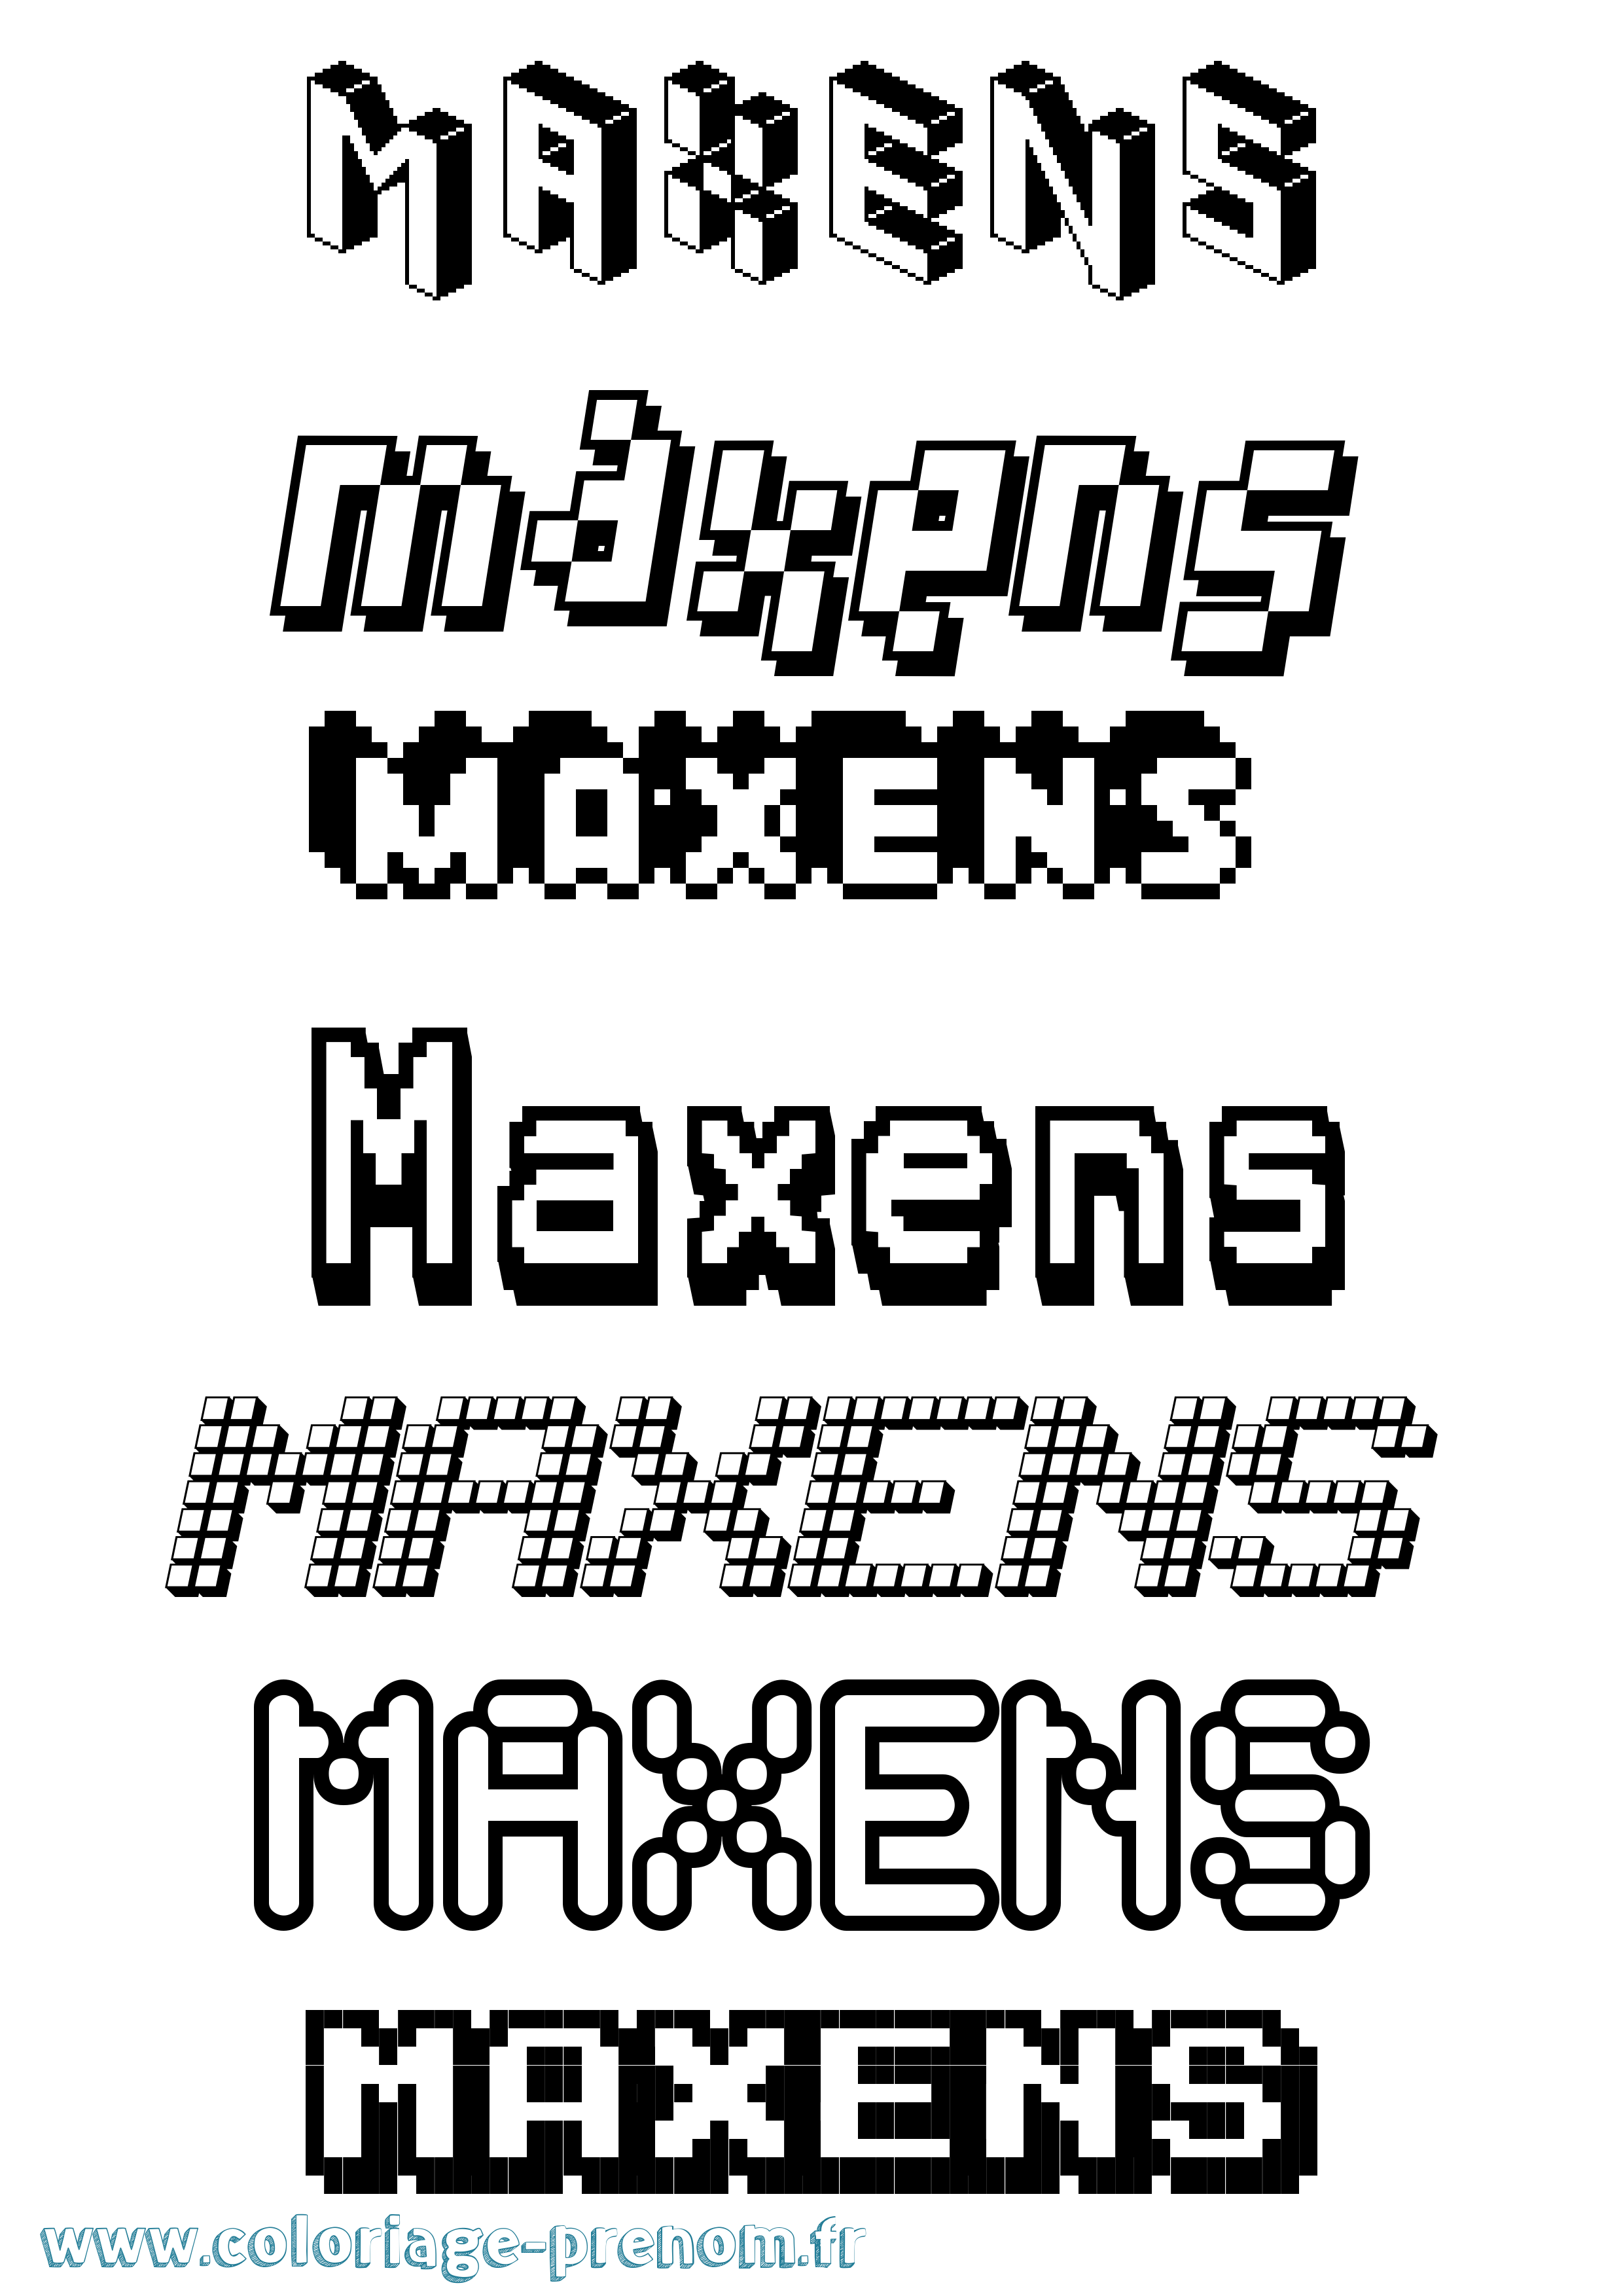 Coloriage prénom Maxens Pixel